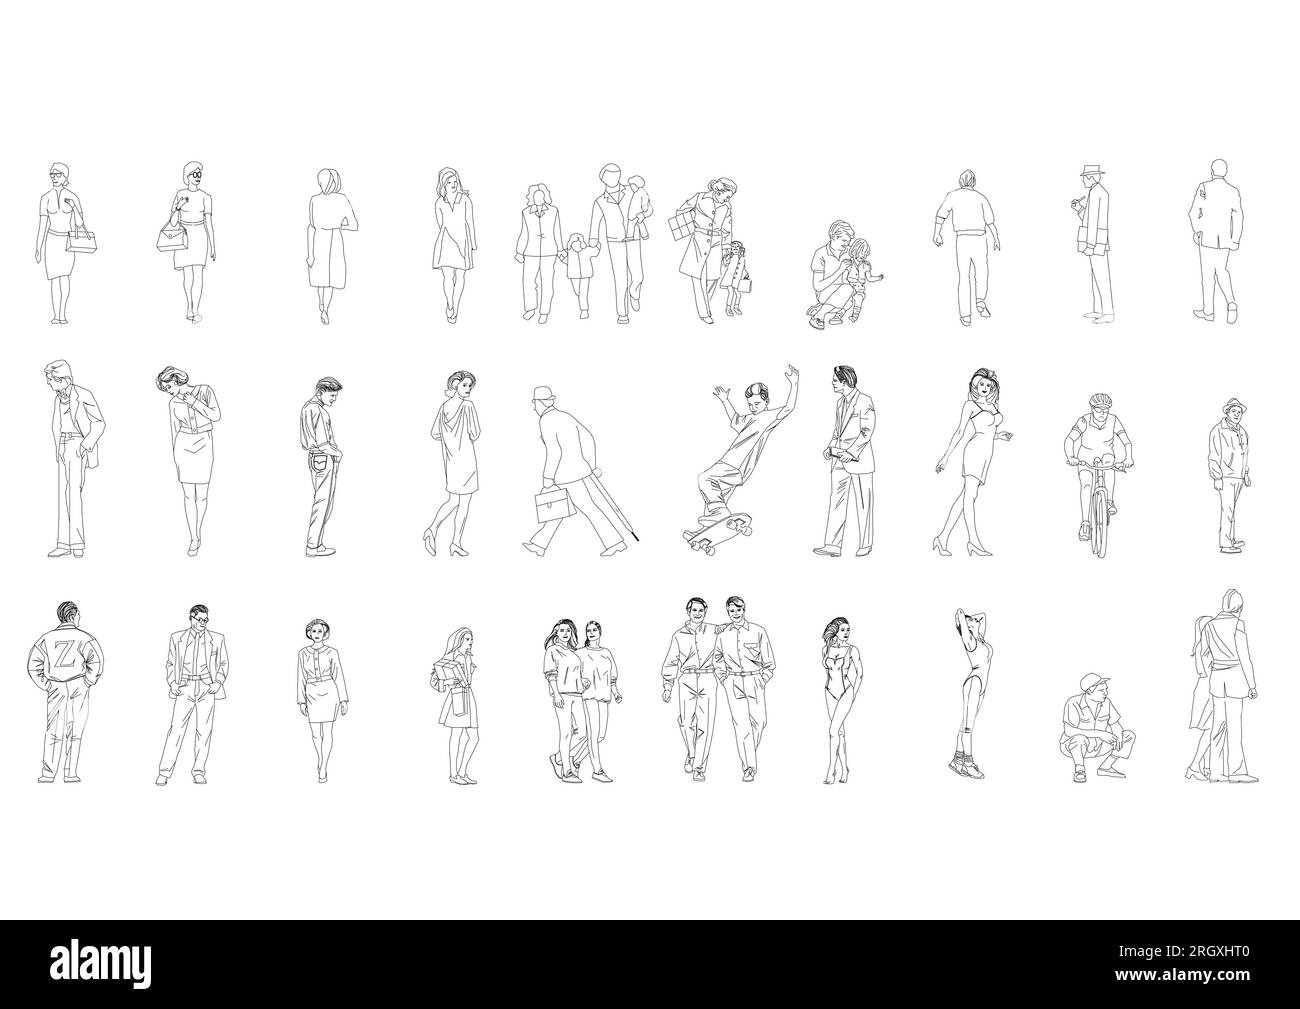 Zeigen Sie Menschen, die Männer-Frauen-Vektorbilder zeichnen. Isolierte grafische Personen isolierte Skizzen Einfachheit von Menschen gezeichnete durchgehende Linien. Stock Vektor